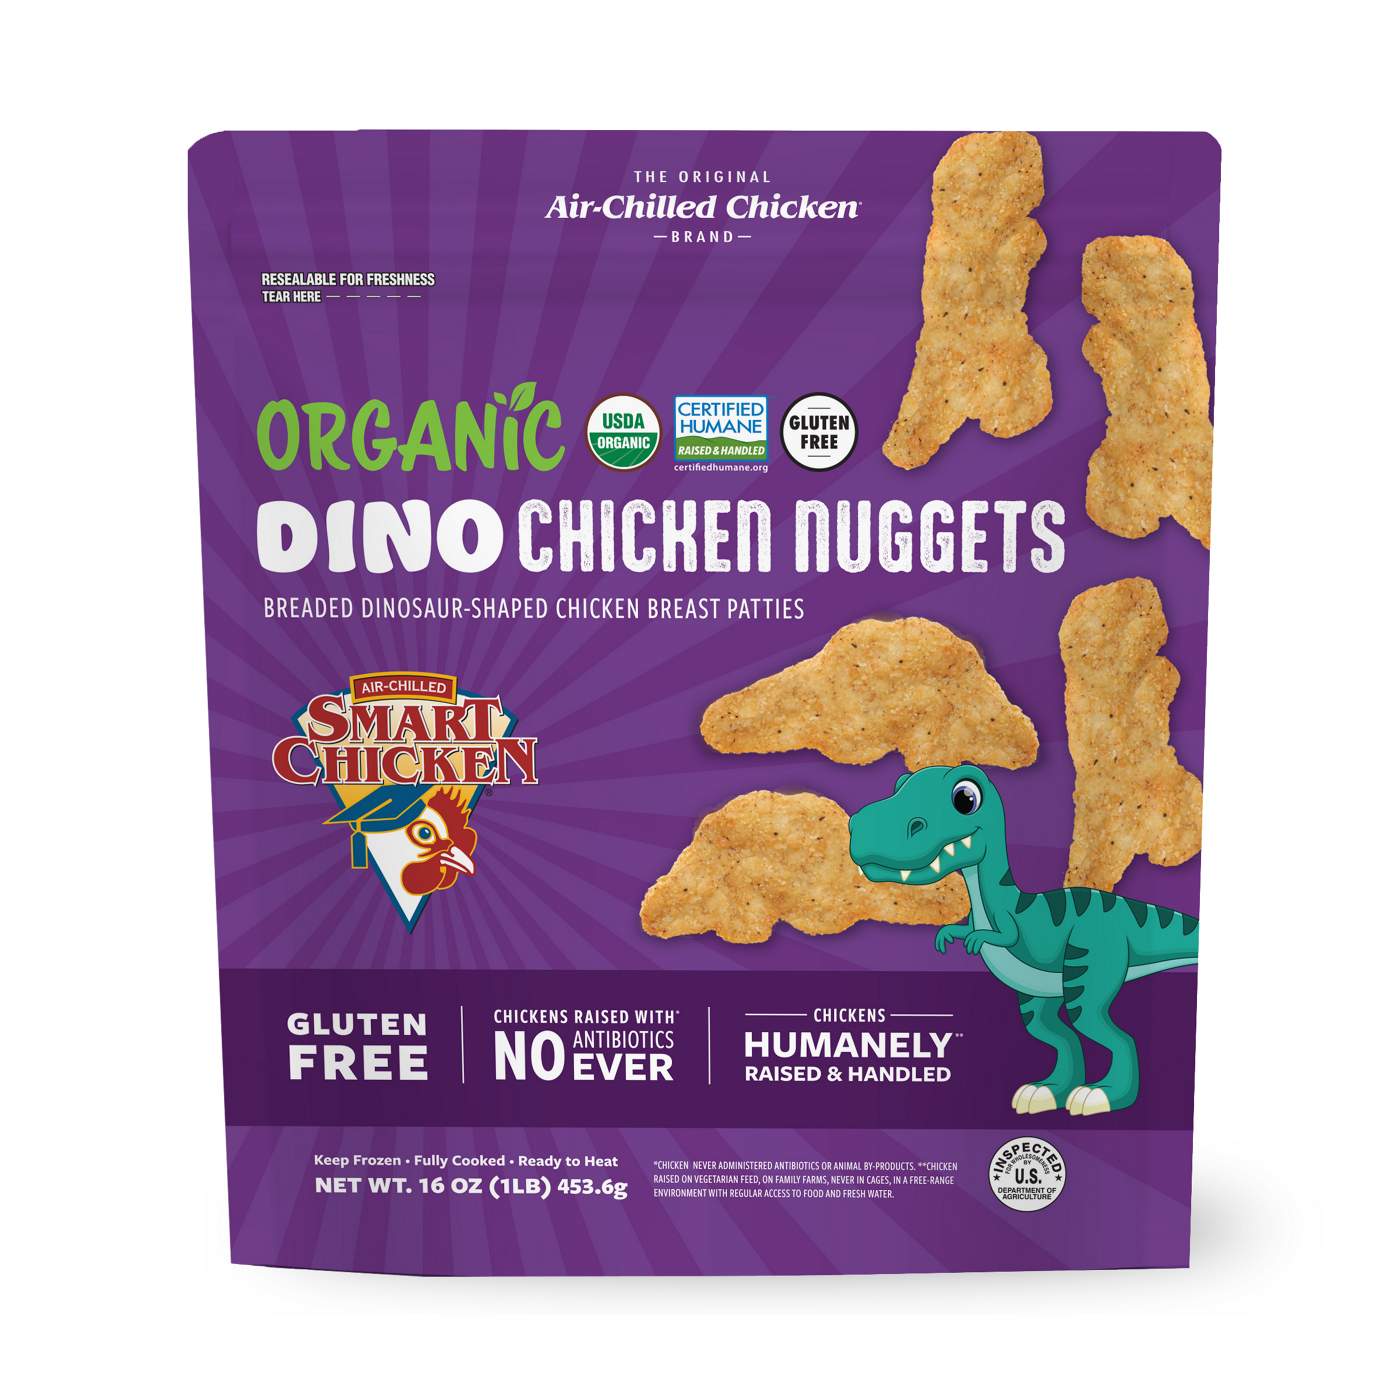 Smart Chicken Frozen Organic Dino Chicken Nuggets; image 1 of 2